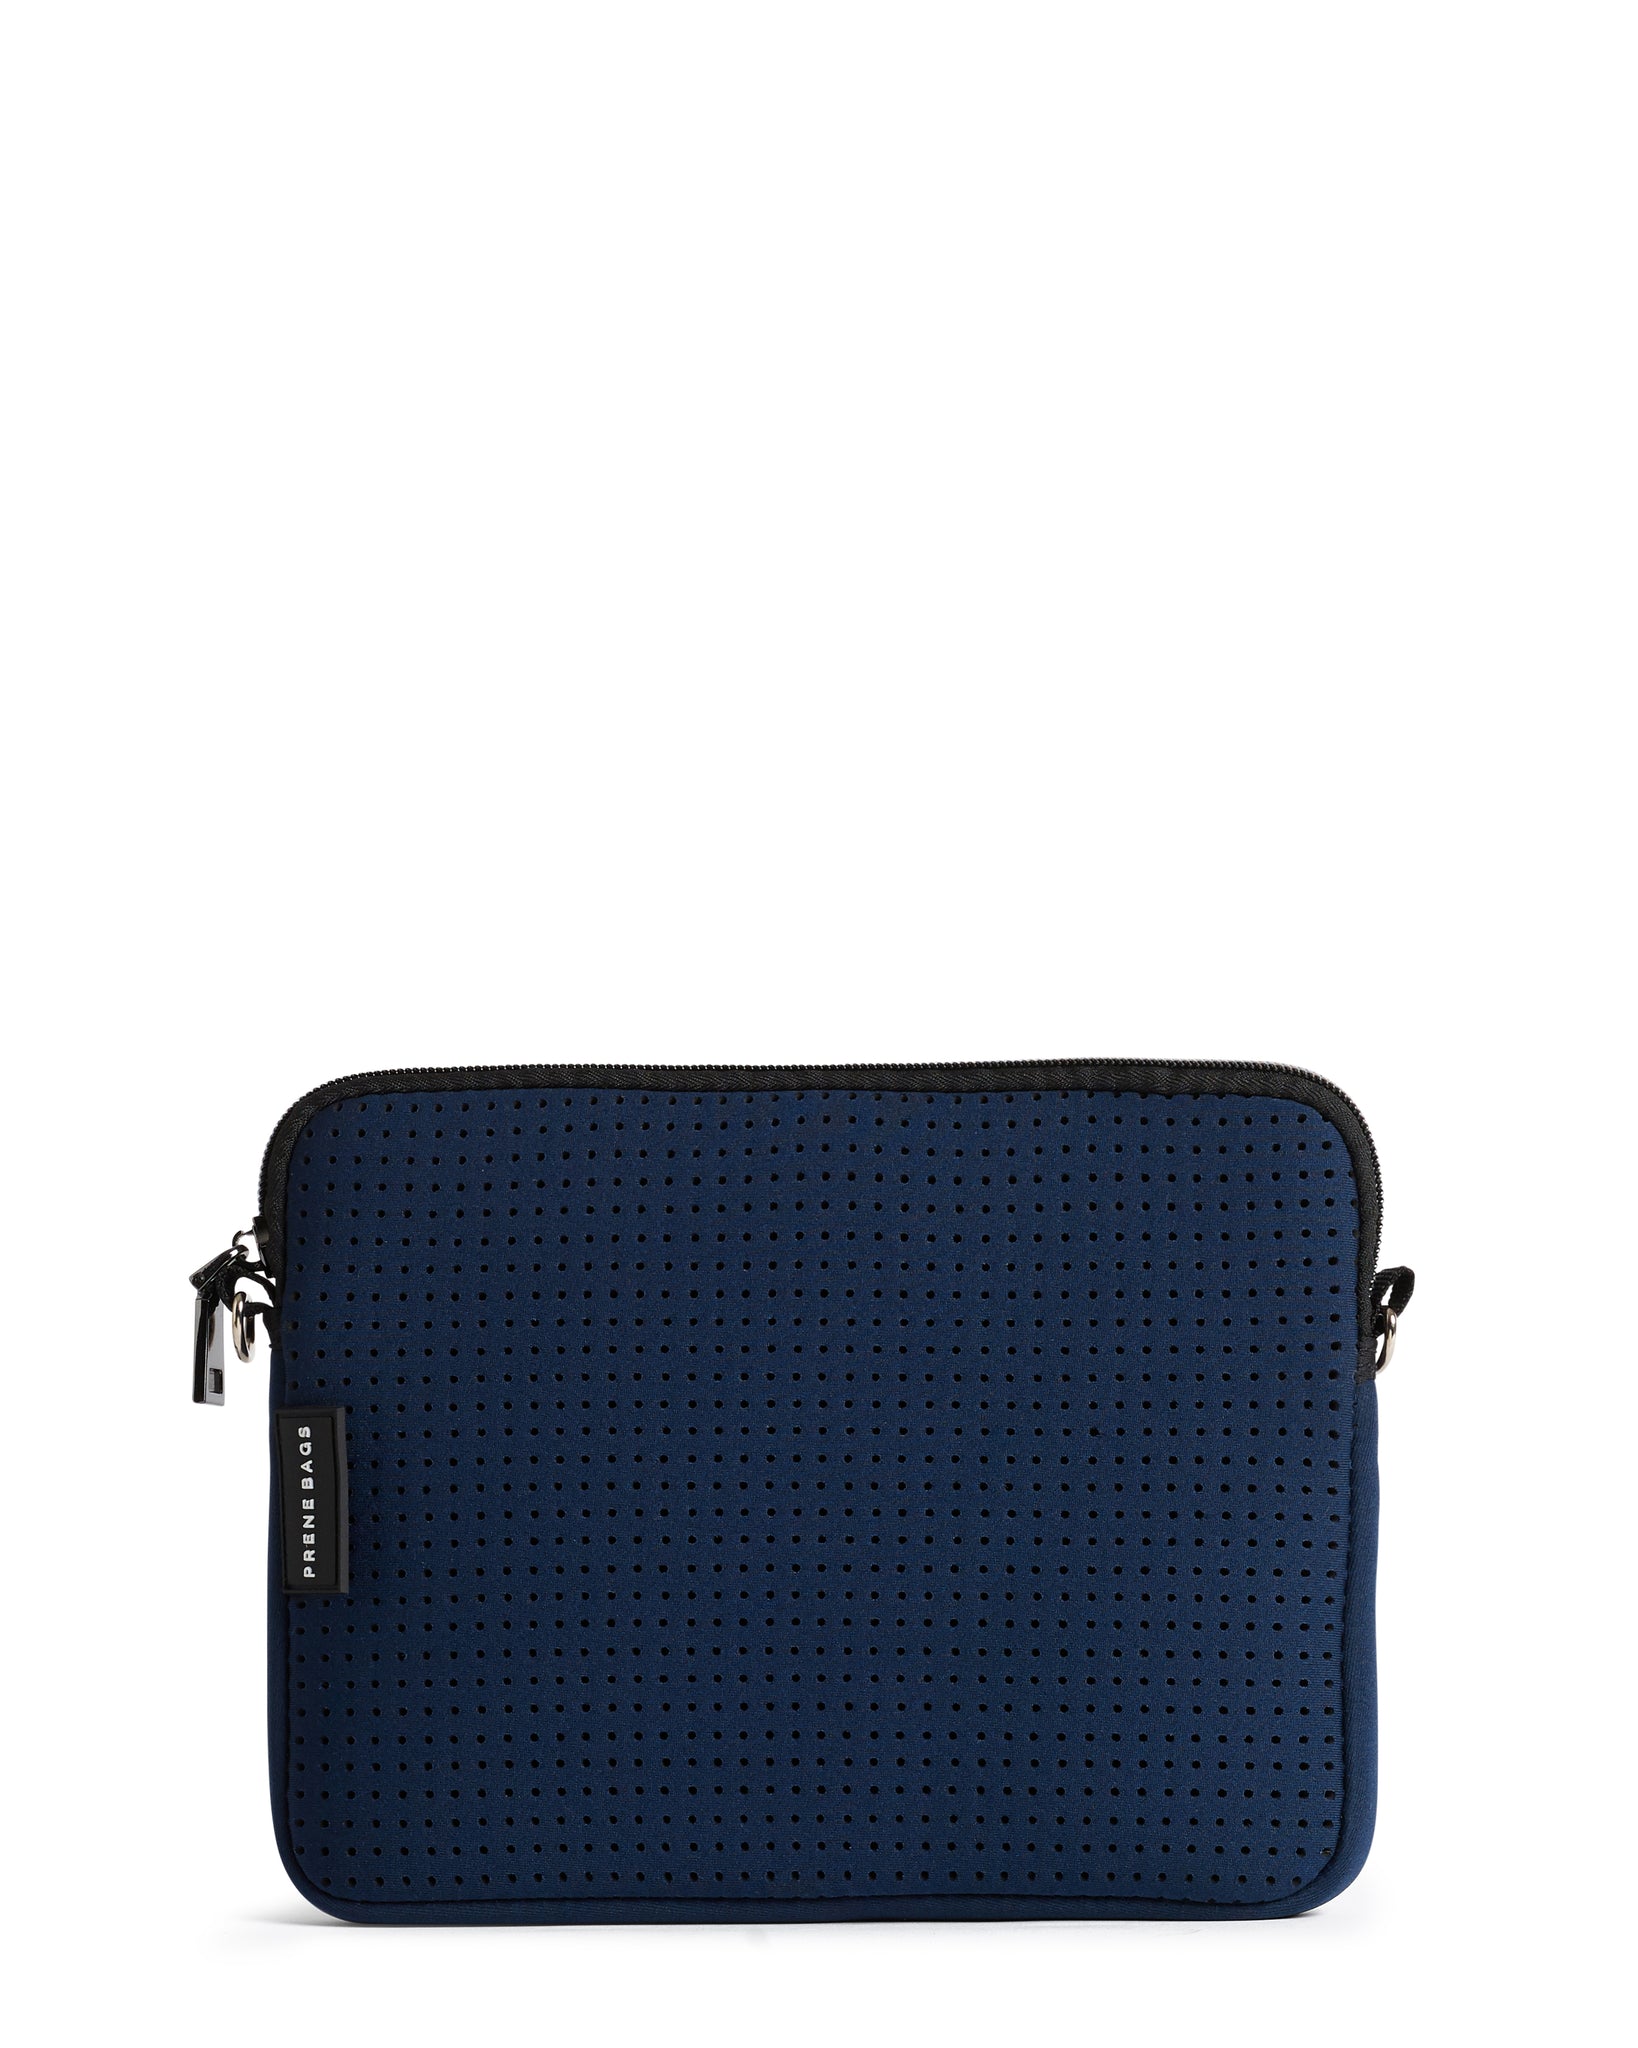 The Pixie Bag (NAVY BLUE) Neoprene Crossbody Bag